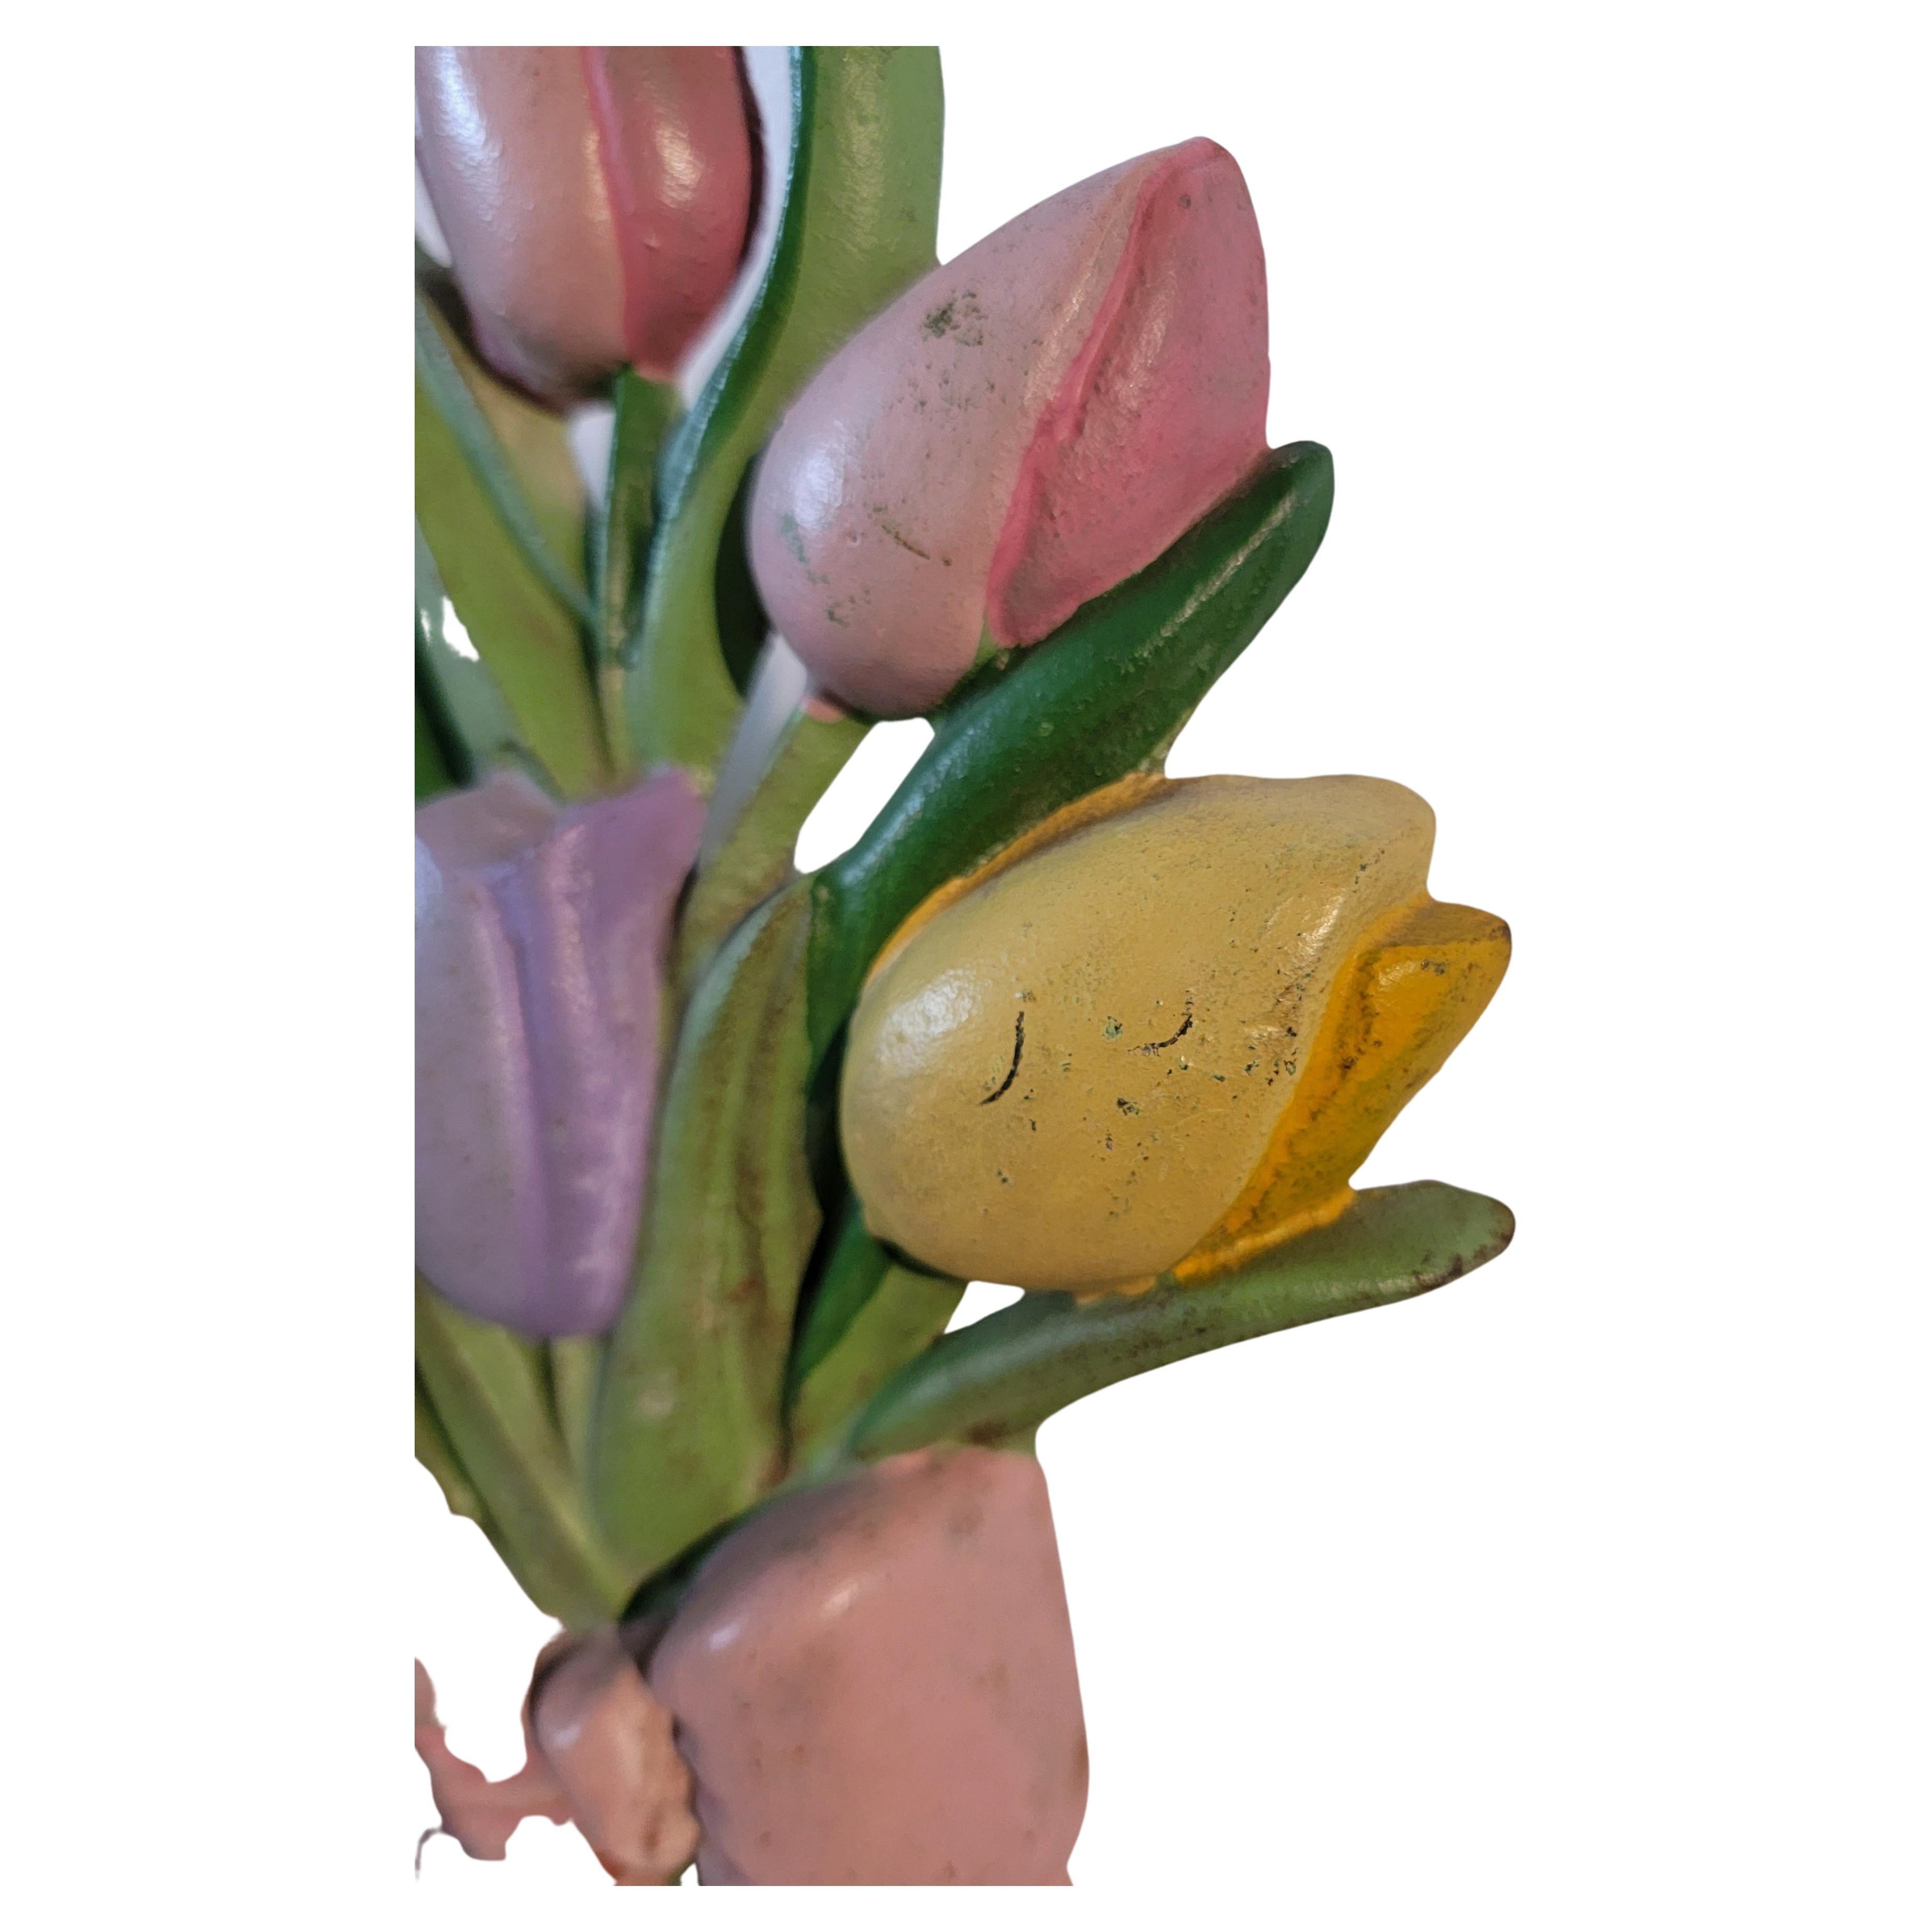 Original butoir de porte en fonte peint Hubley tulipes. Couleurs pastel. 
Bon état.